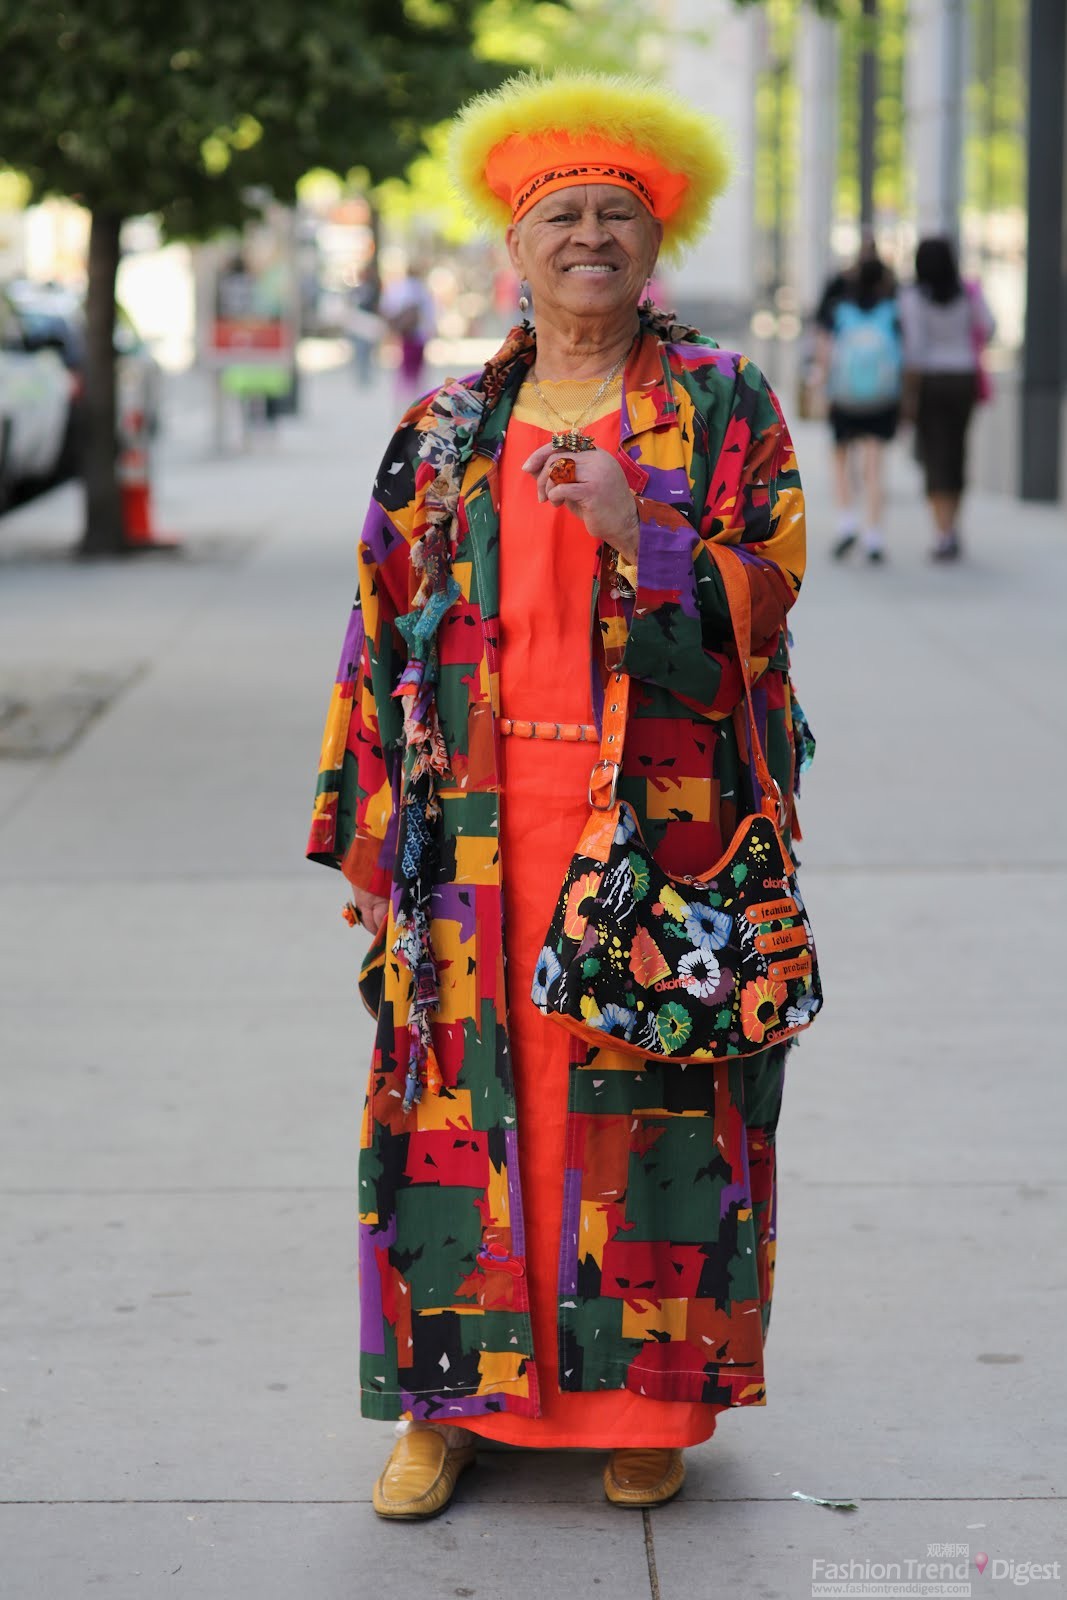 10. 这位老太太穿得相当花哨，橘色长裙还不够，硬是搭了一件色块大衣和印花包，街头的她顿时引起了摄影师的注意。